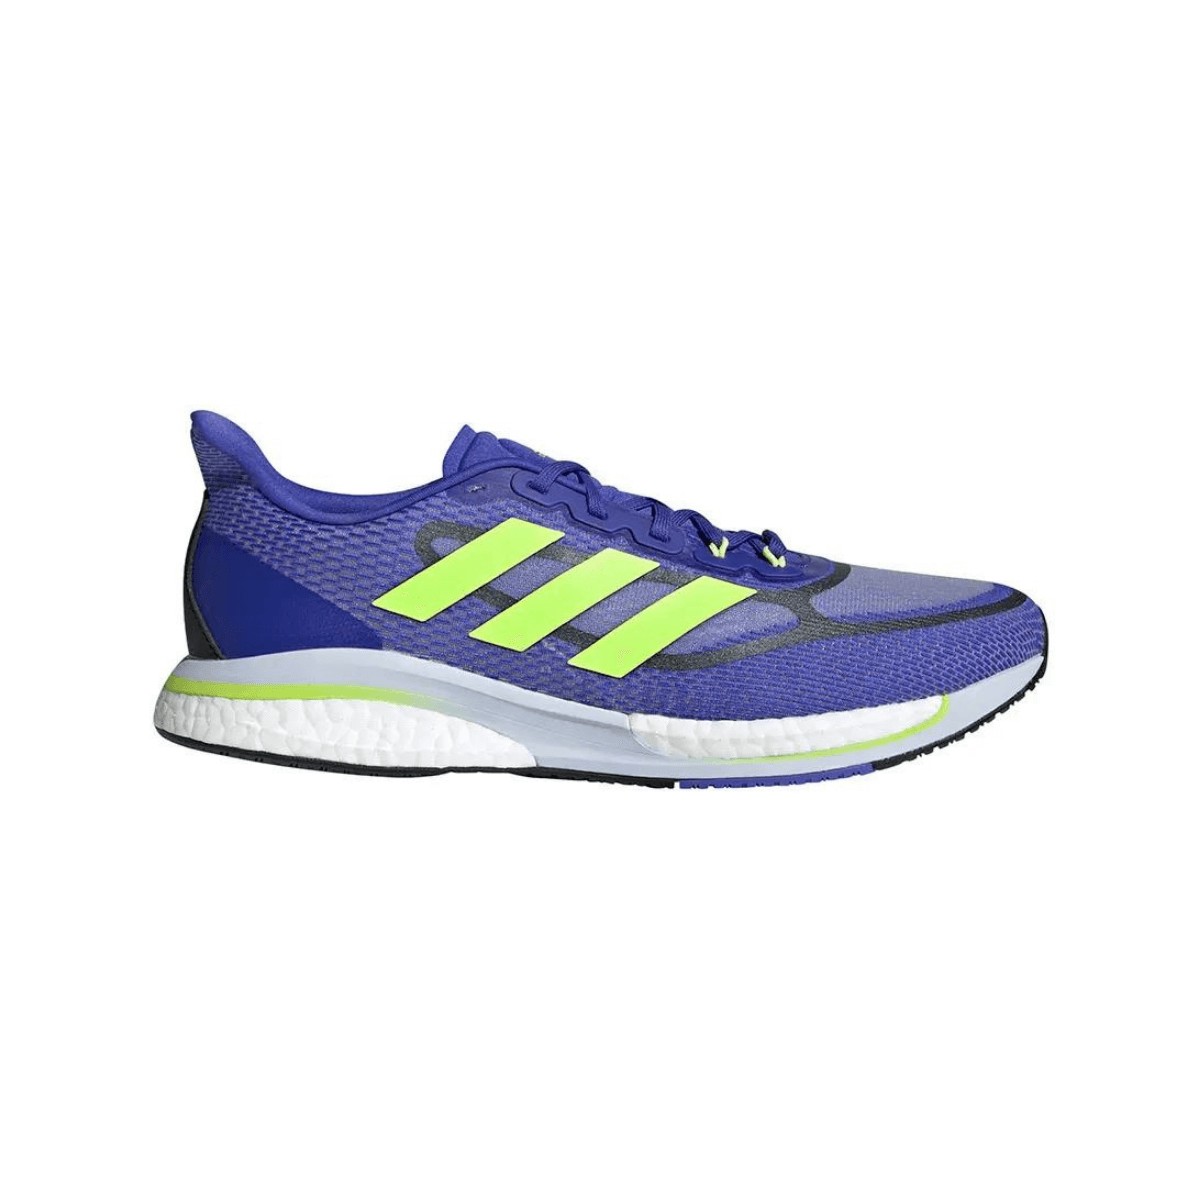 Adidas Supernova + Shoes Blue Green AW21, Size UK 11.5